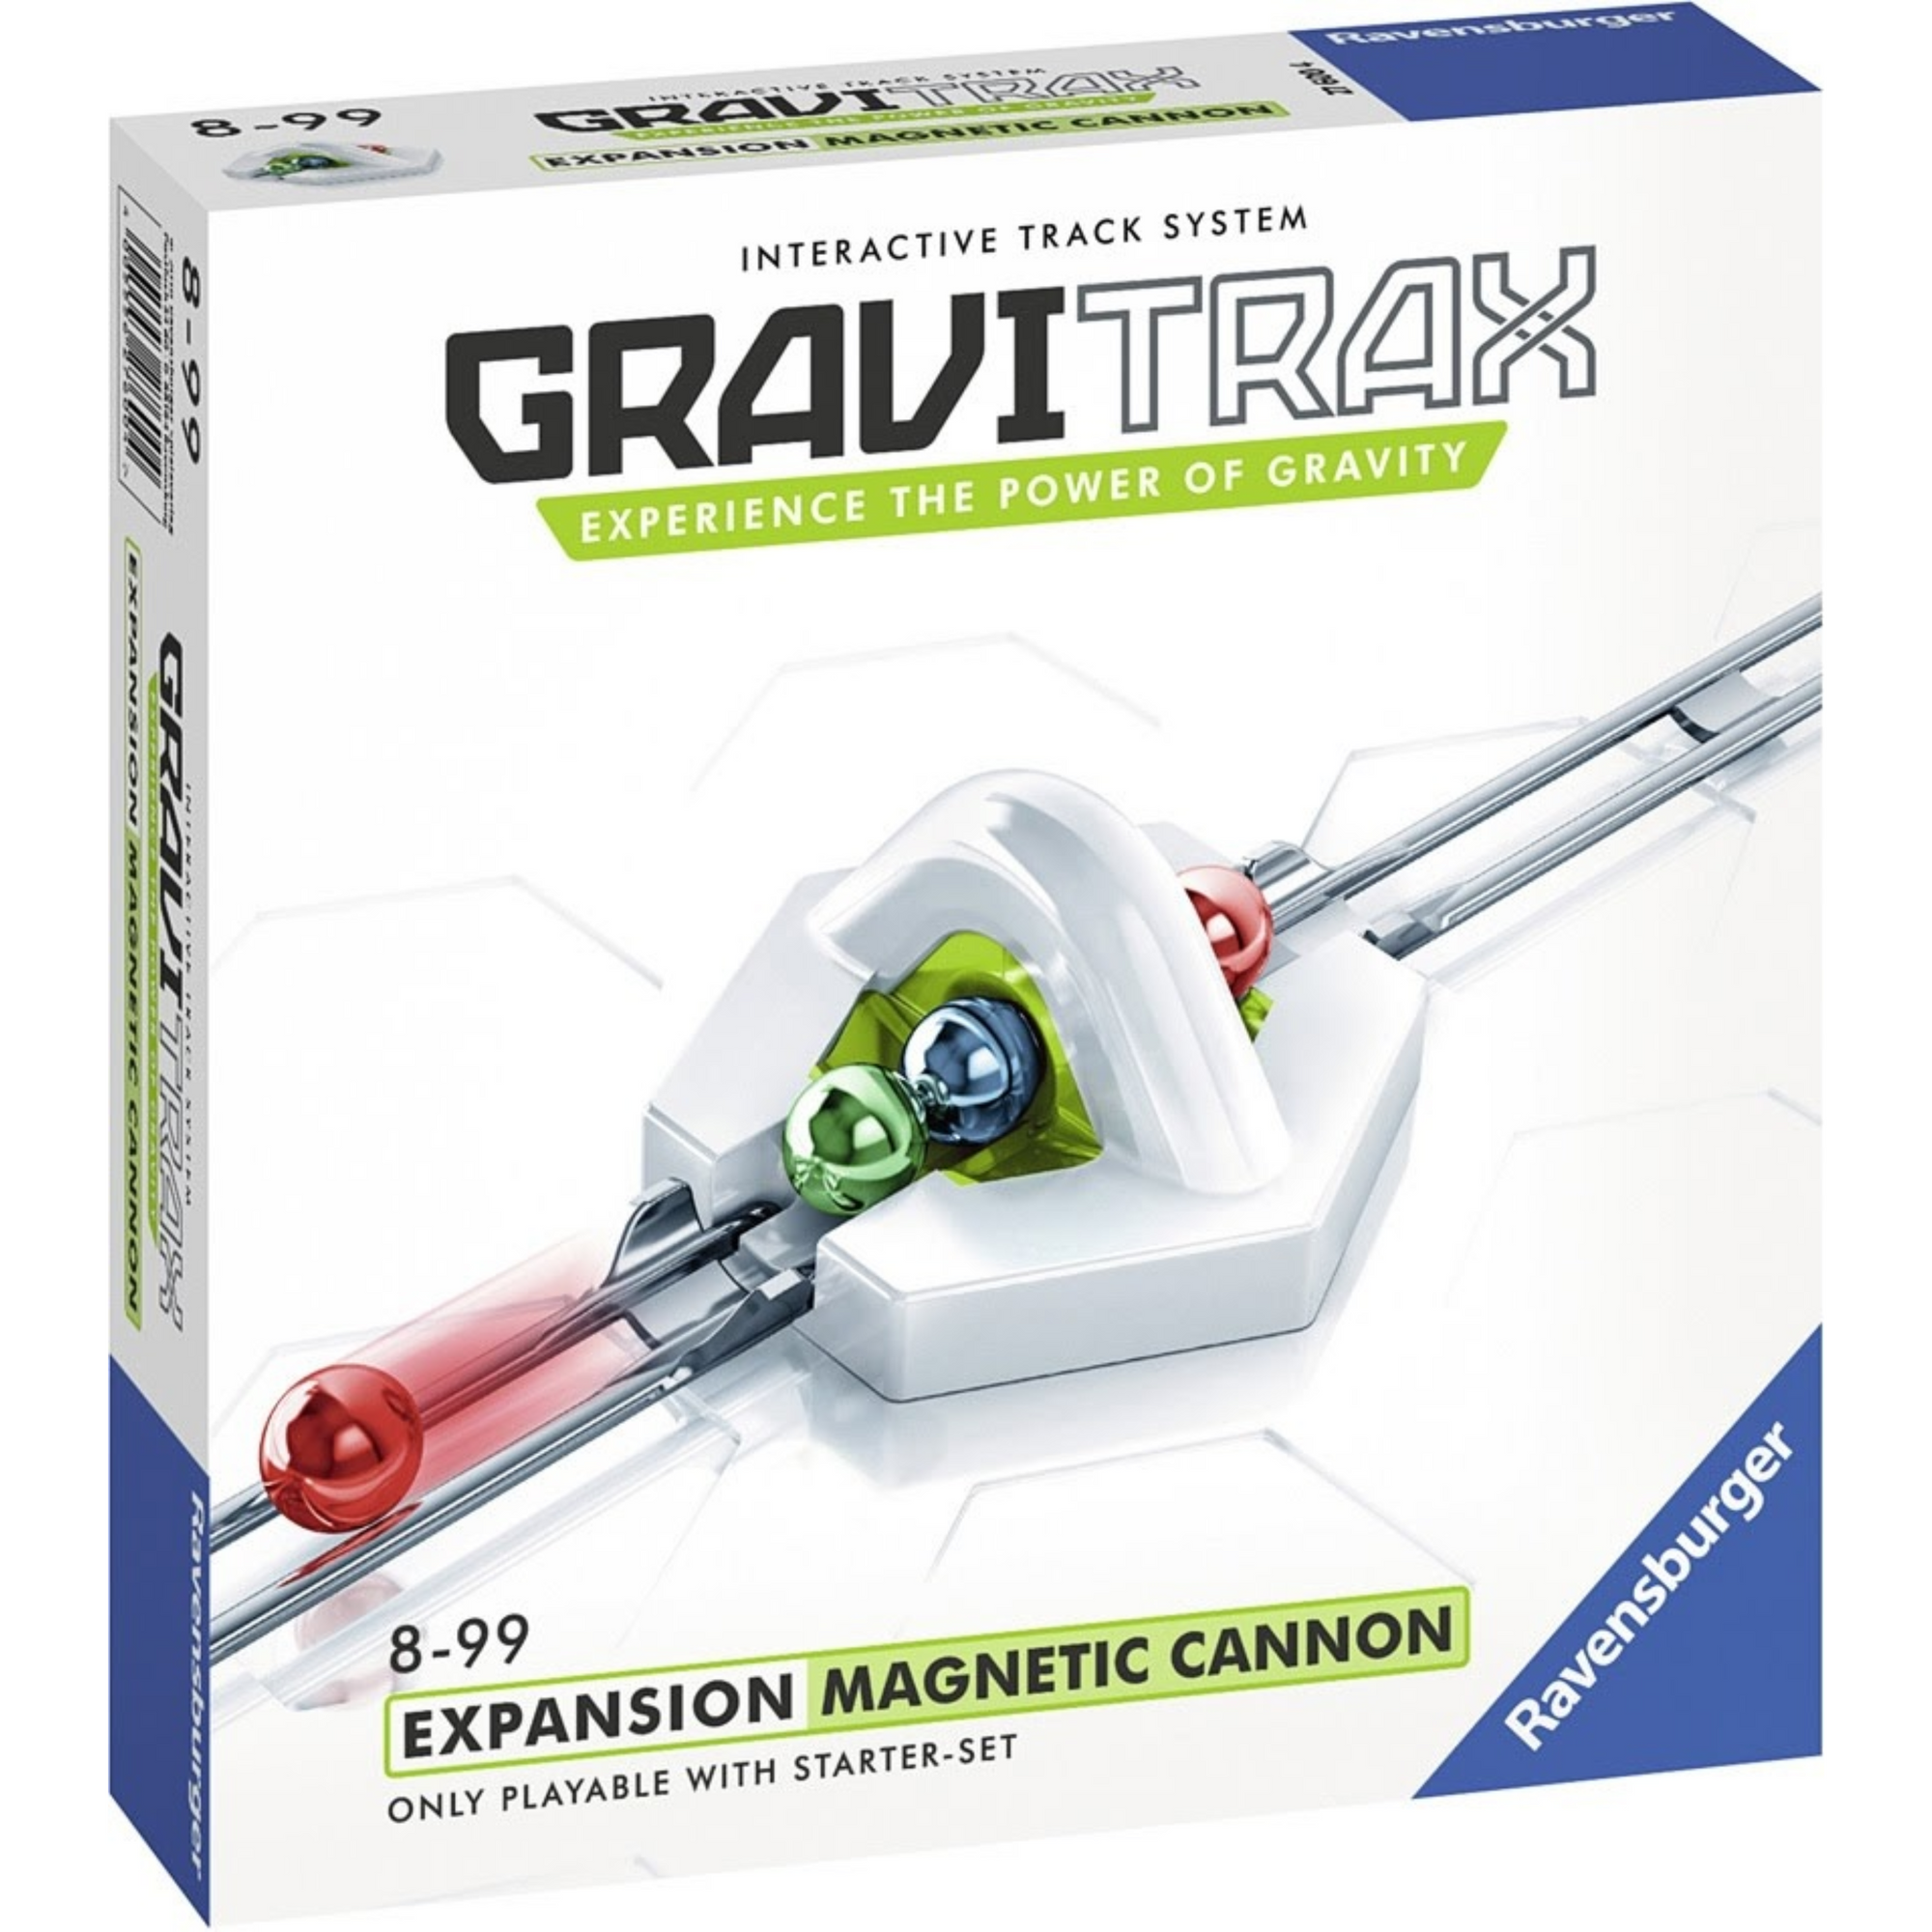 Gravitrax canon magnetico expansión